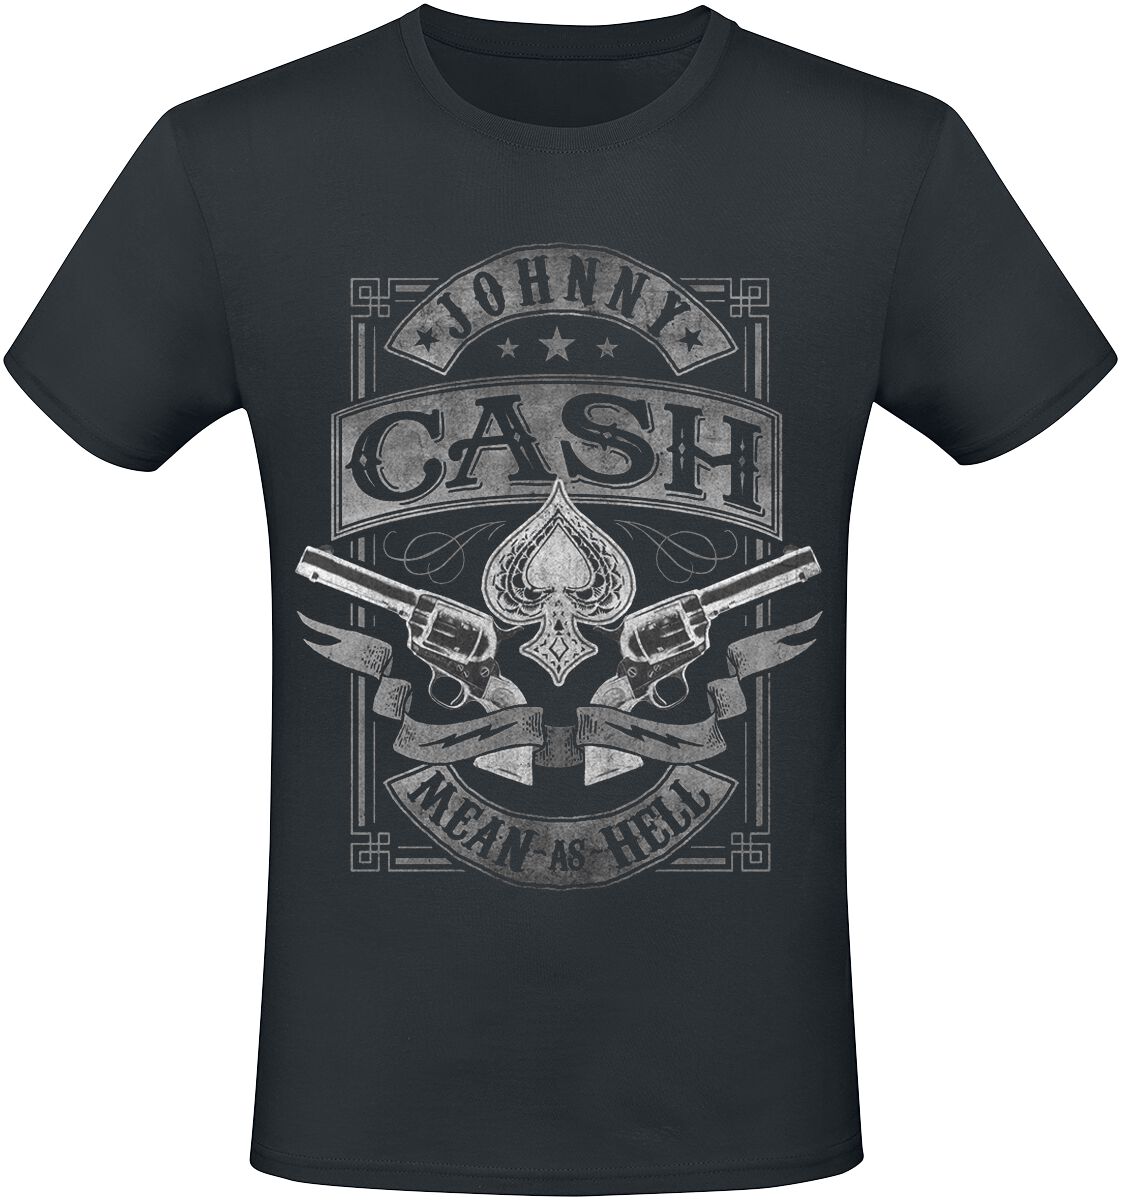 Johnny Cash T-Shirt - Mean As Hell - S bis XXL - für Männer - Größe XL - schwarz  - Lizenziertes Merchandise! von Johnny Cash